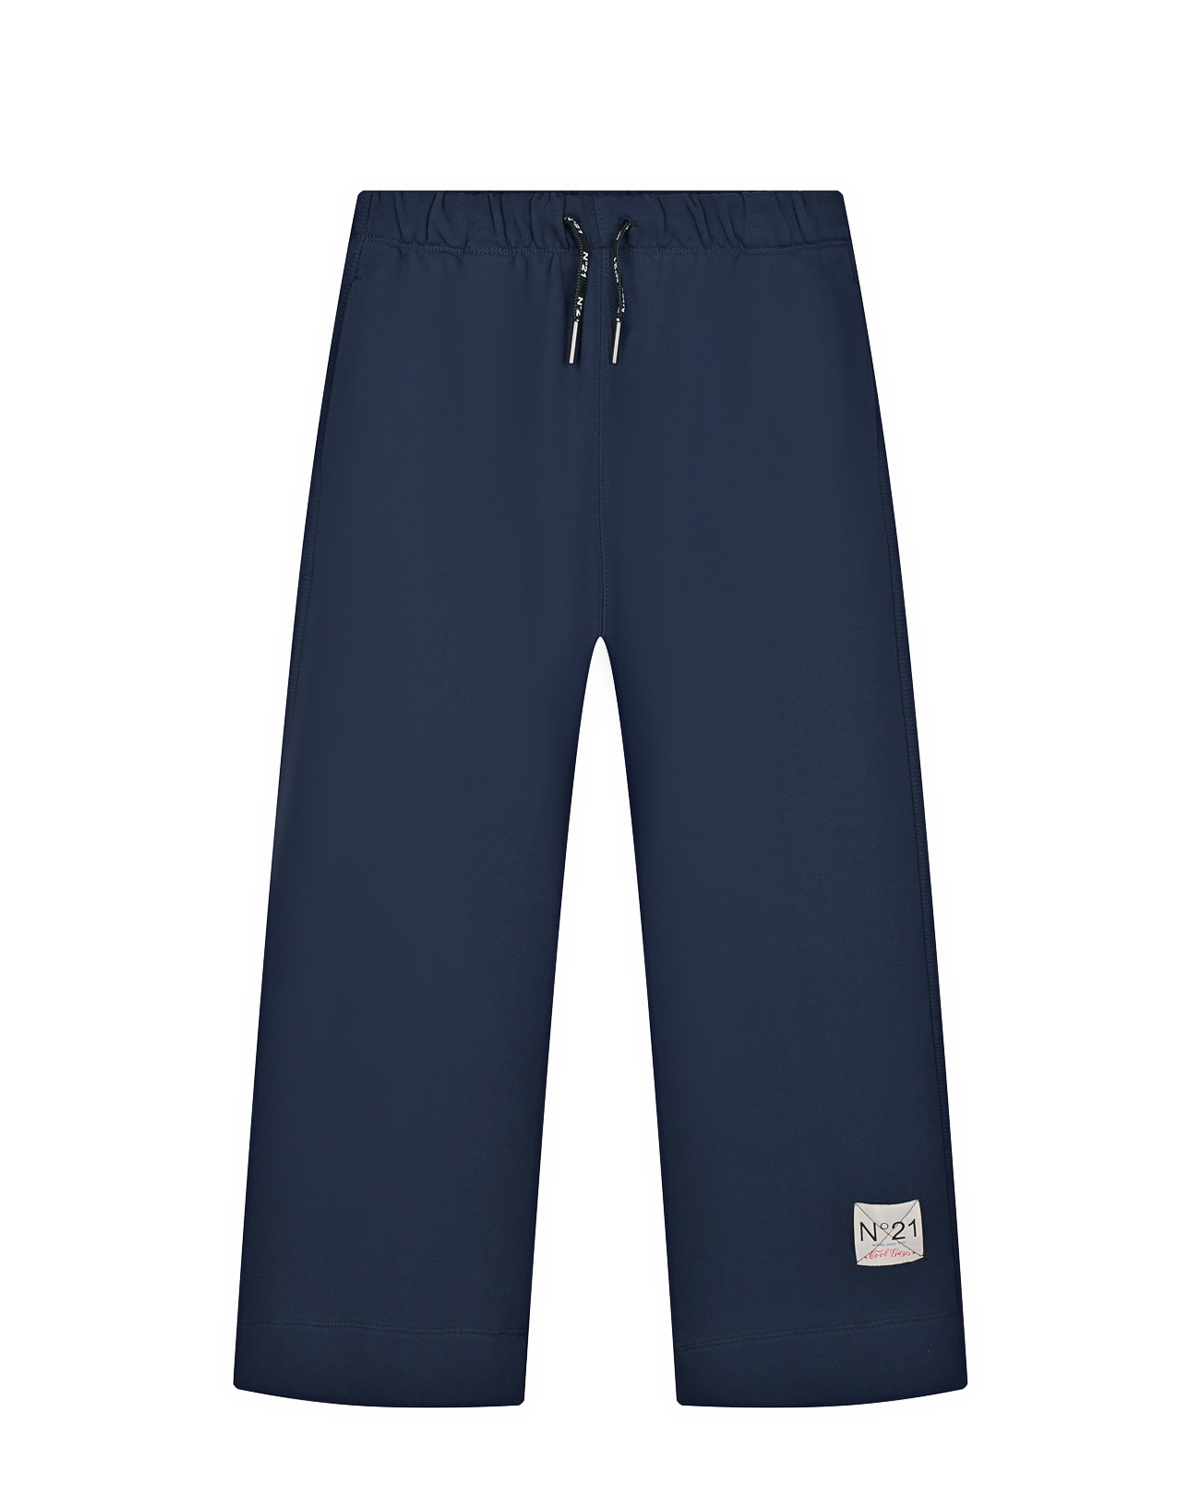 Широкие спортивные брюки No. 21 детские, размер 152, цвет синий - фото 1